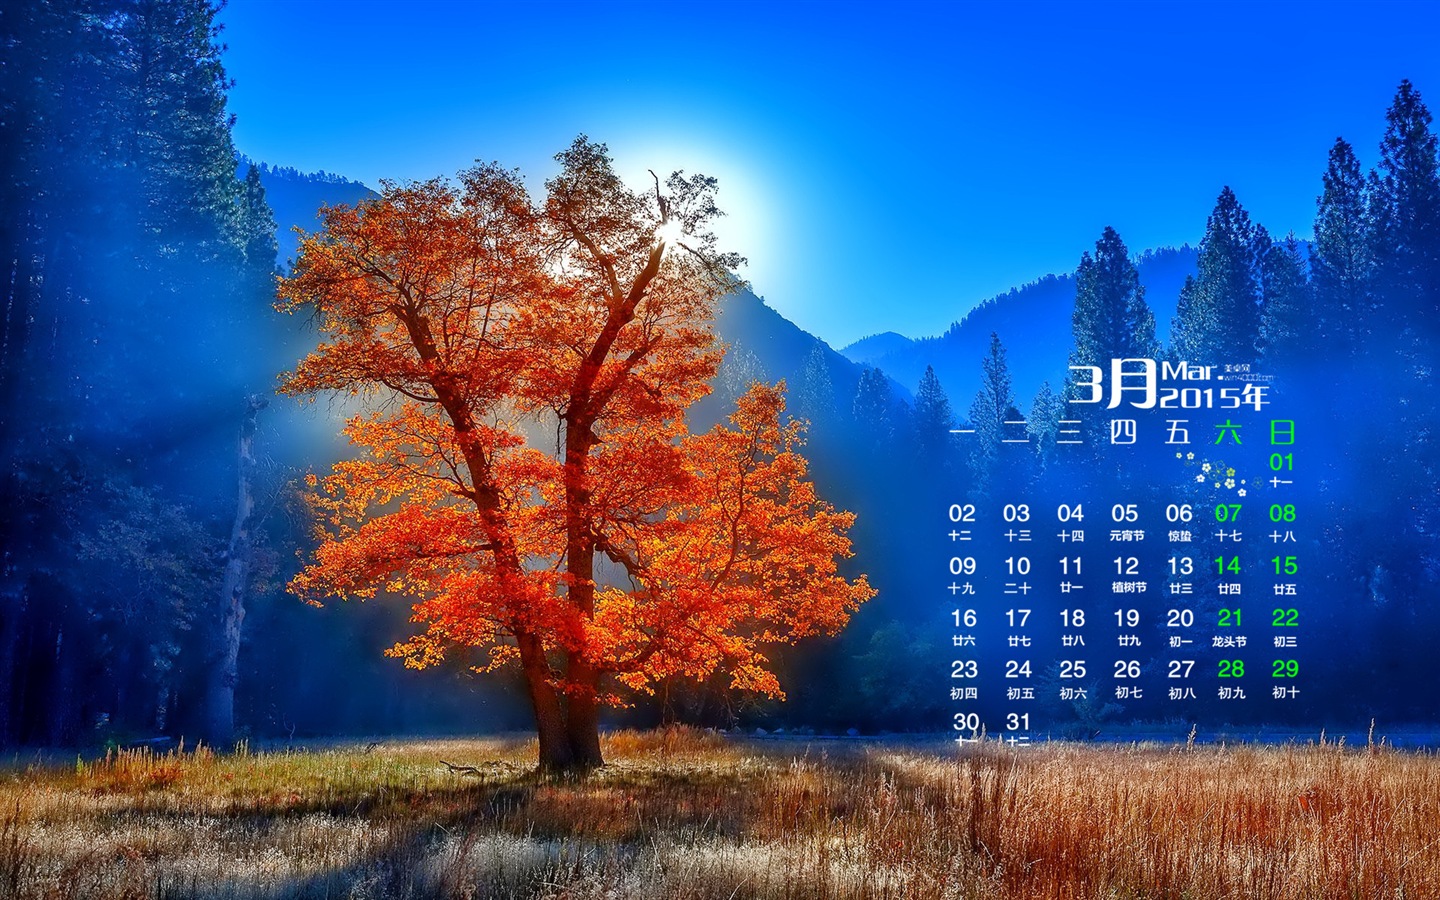 March 2015 Calendar wallpaper (1) #16 - 1440x900